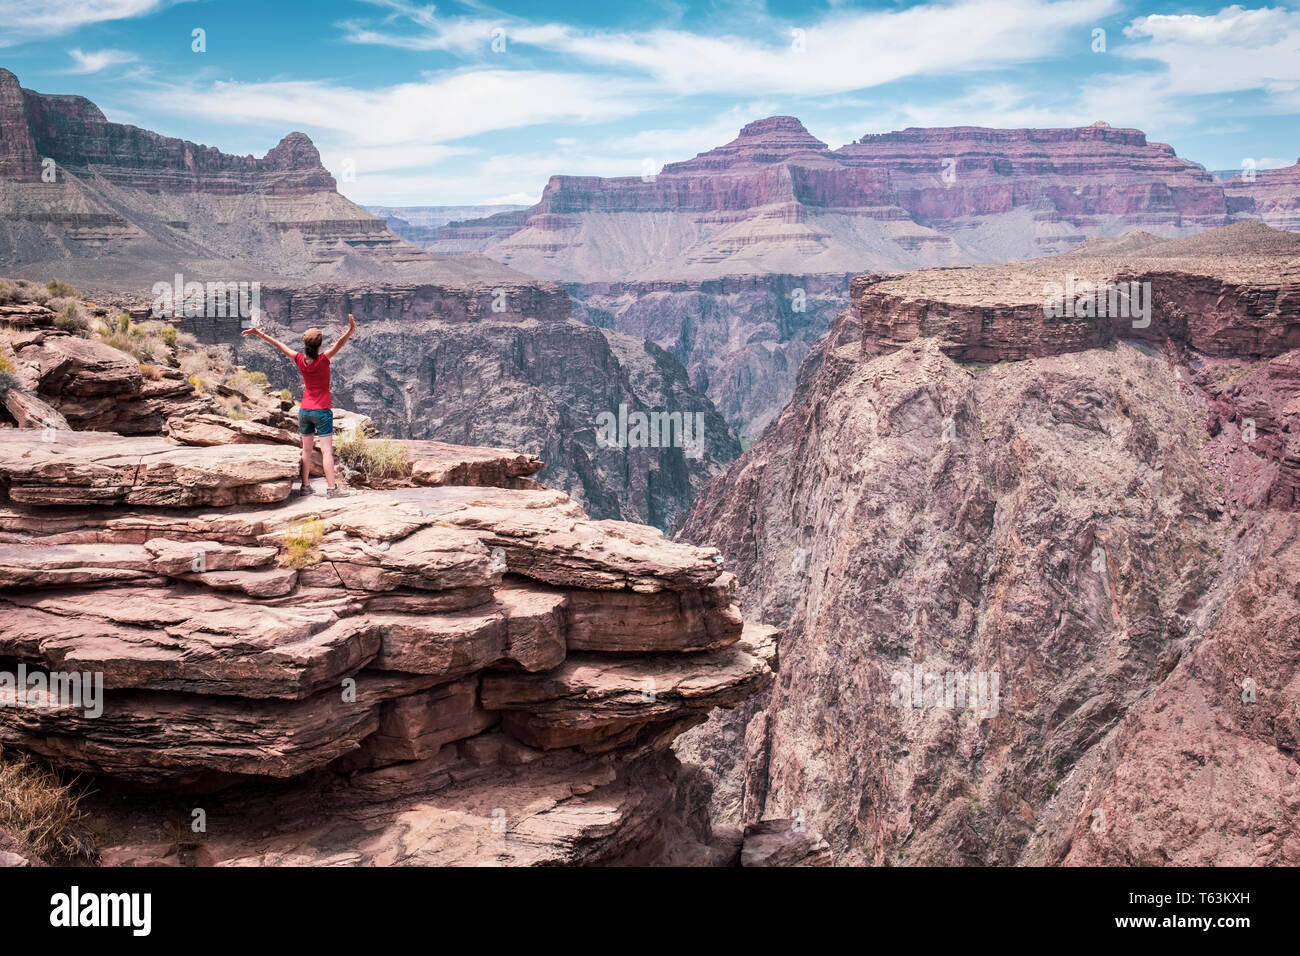 Visiteuse profitant d'une vue époustouflante sur la rivière Colorado Plateau de point à Grand Canyon National Park, Arizona, USA Banque D'Images